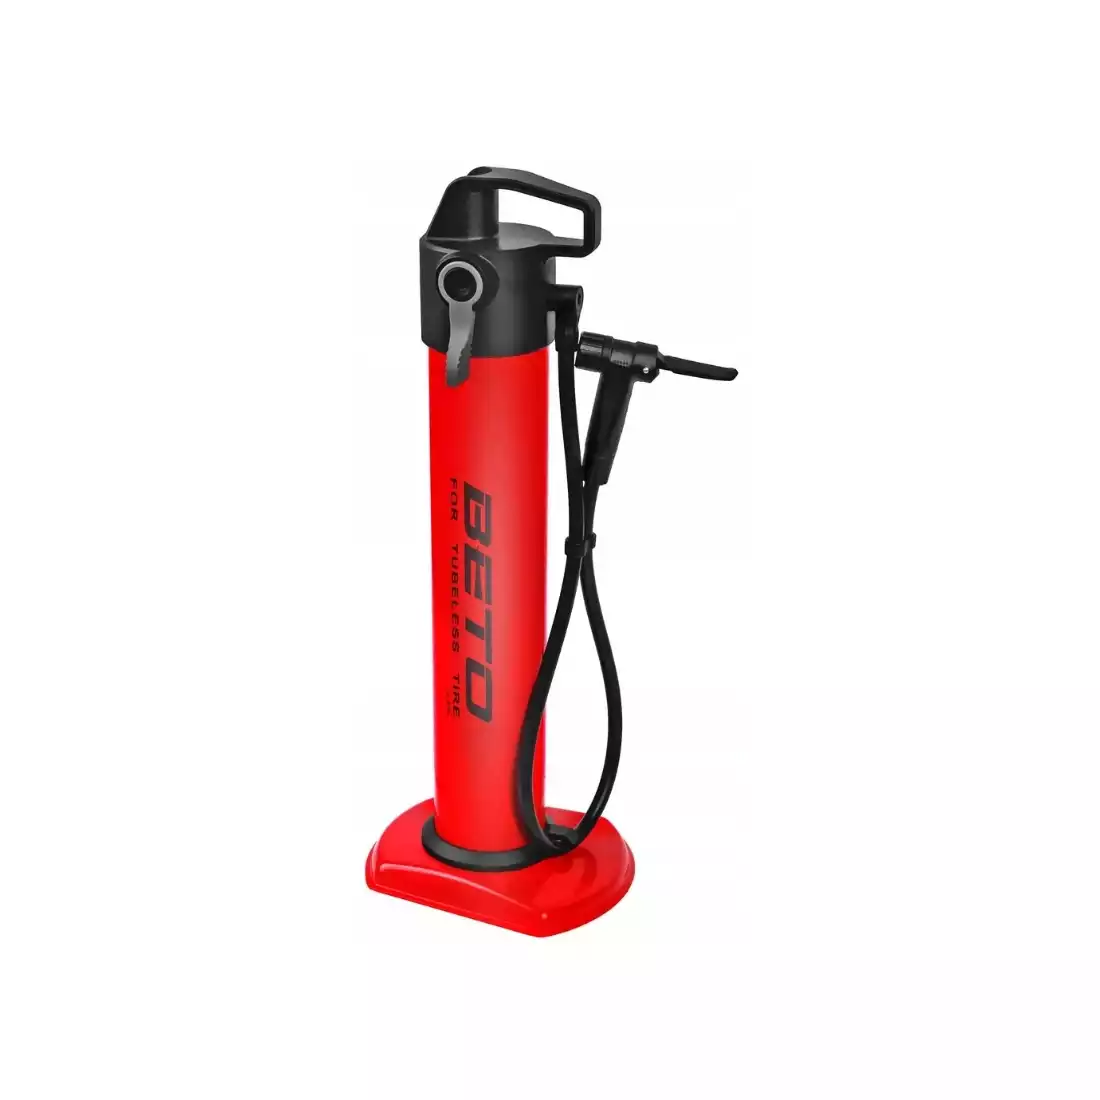 BETO CJA-001S floor pump, tubeless cartridge 11 BAR/160 PSI, red